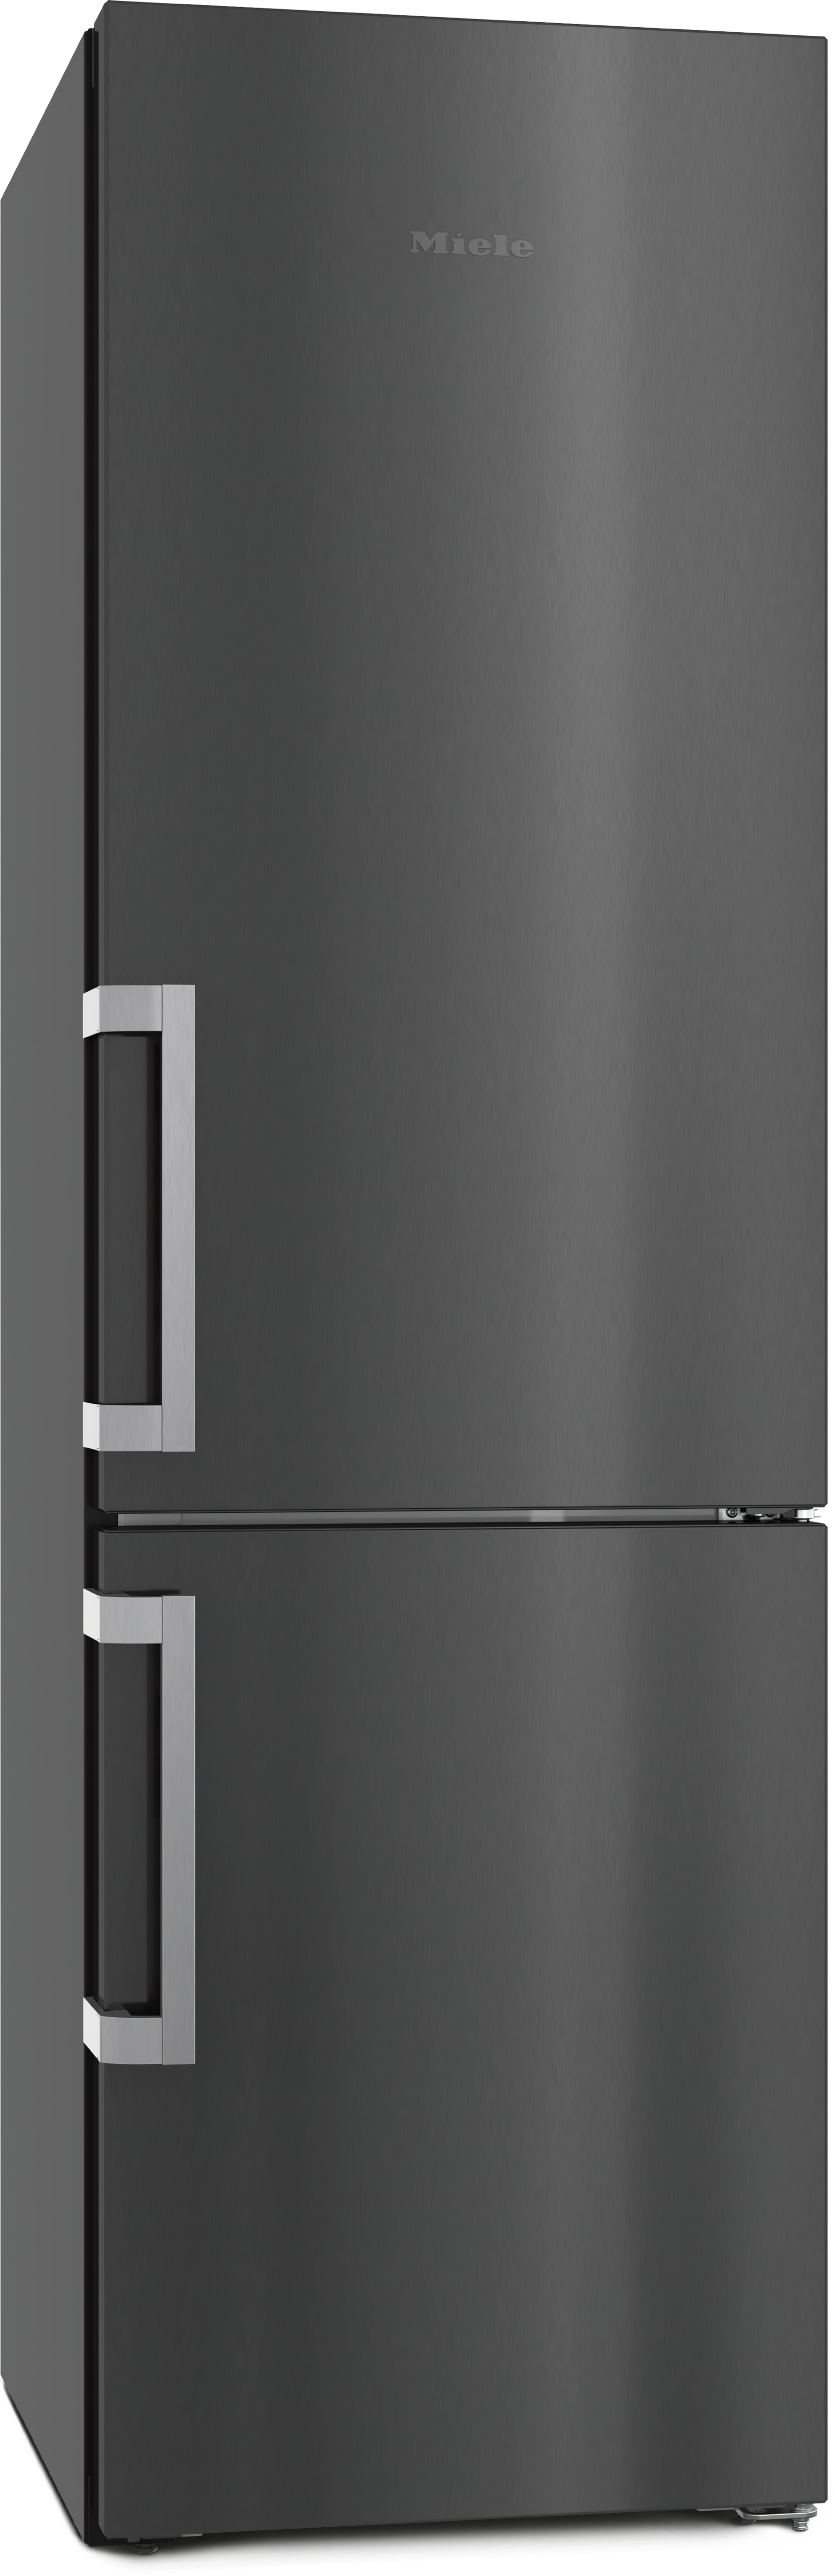 Refrigeration - KFN 4795 AD BlackSteel door - 1